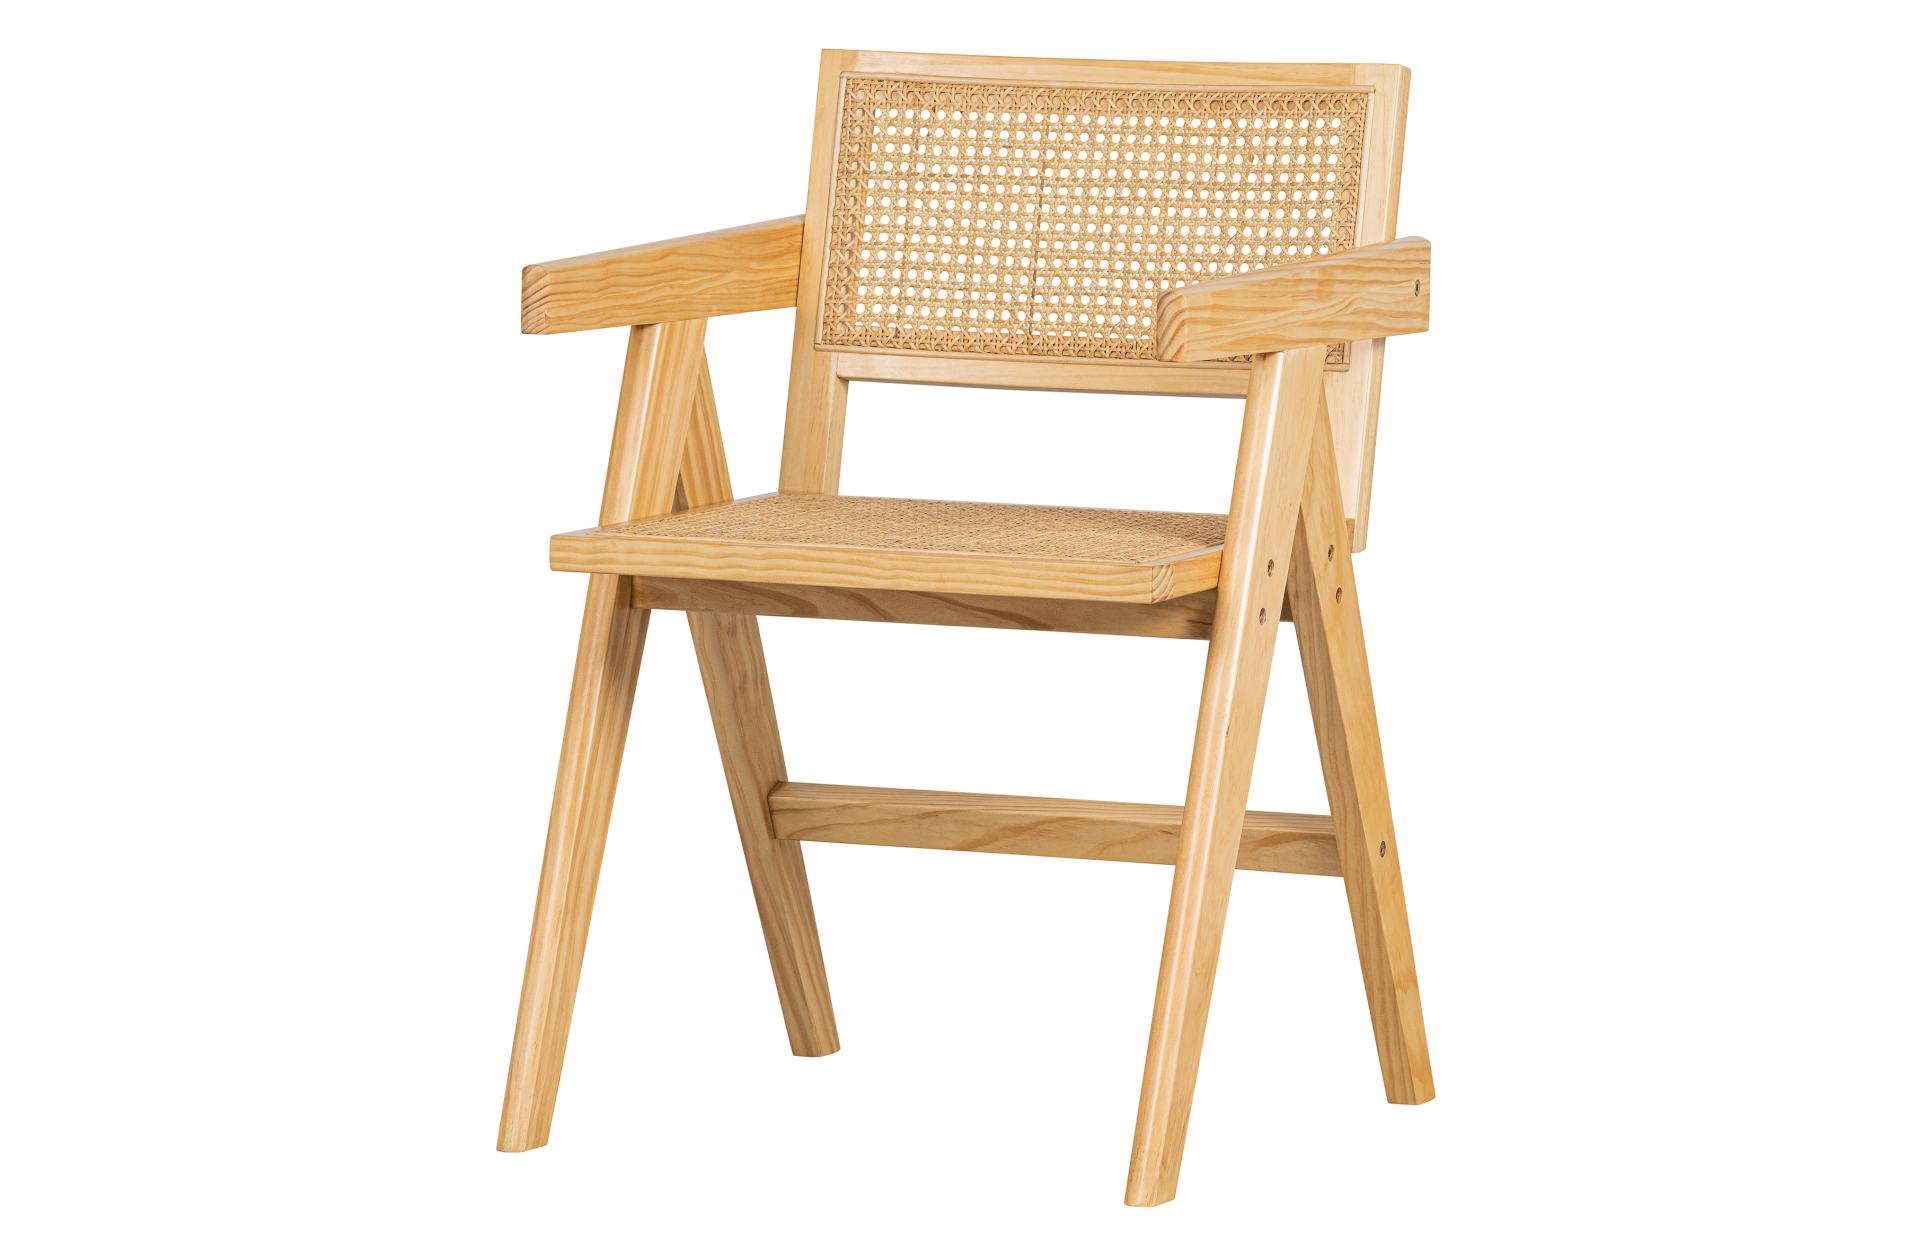 Der Esszimmerstuhl Gunn besitzt ein Skandinavisches Design. Gefertigt wurde der Stuhl aus Rattan und Kiefernholz, welches eine natürliche Farbe besitzt.